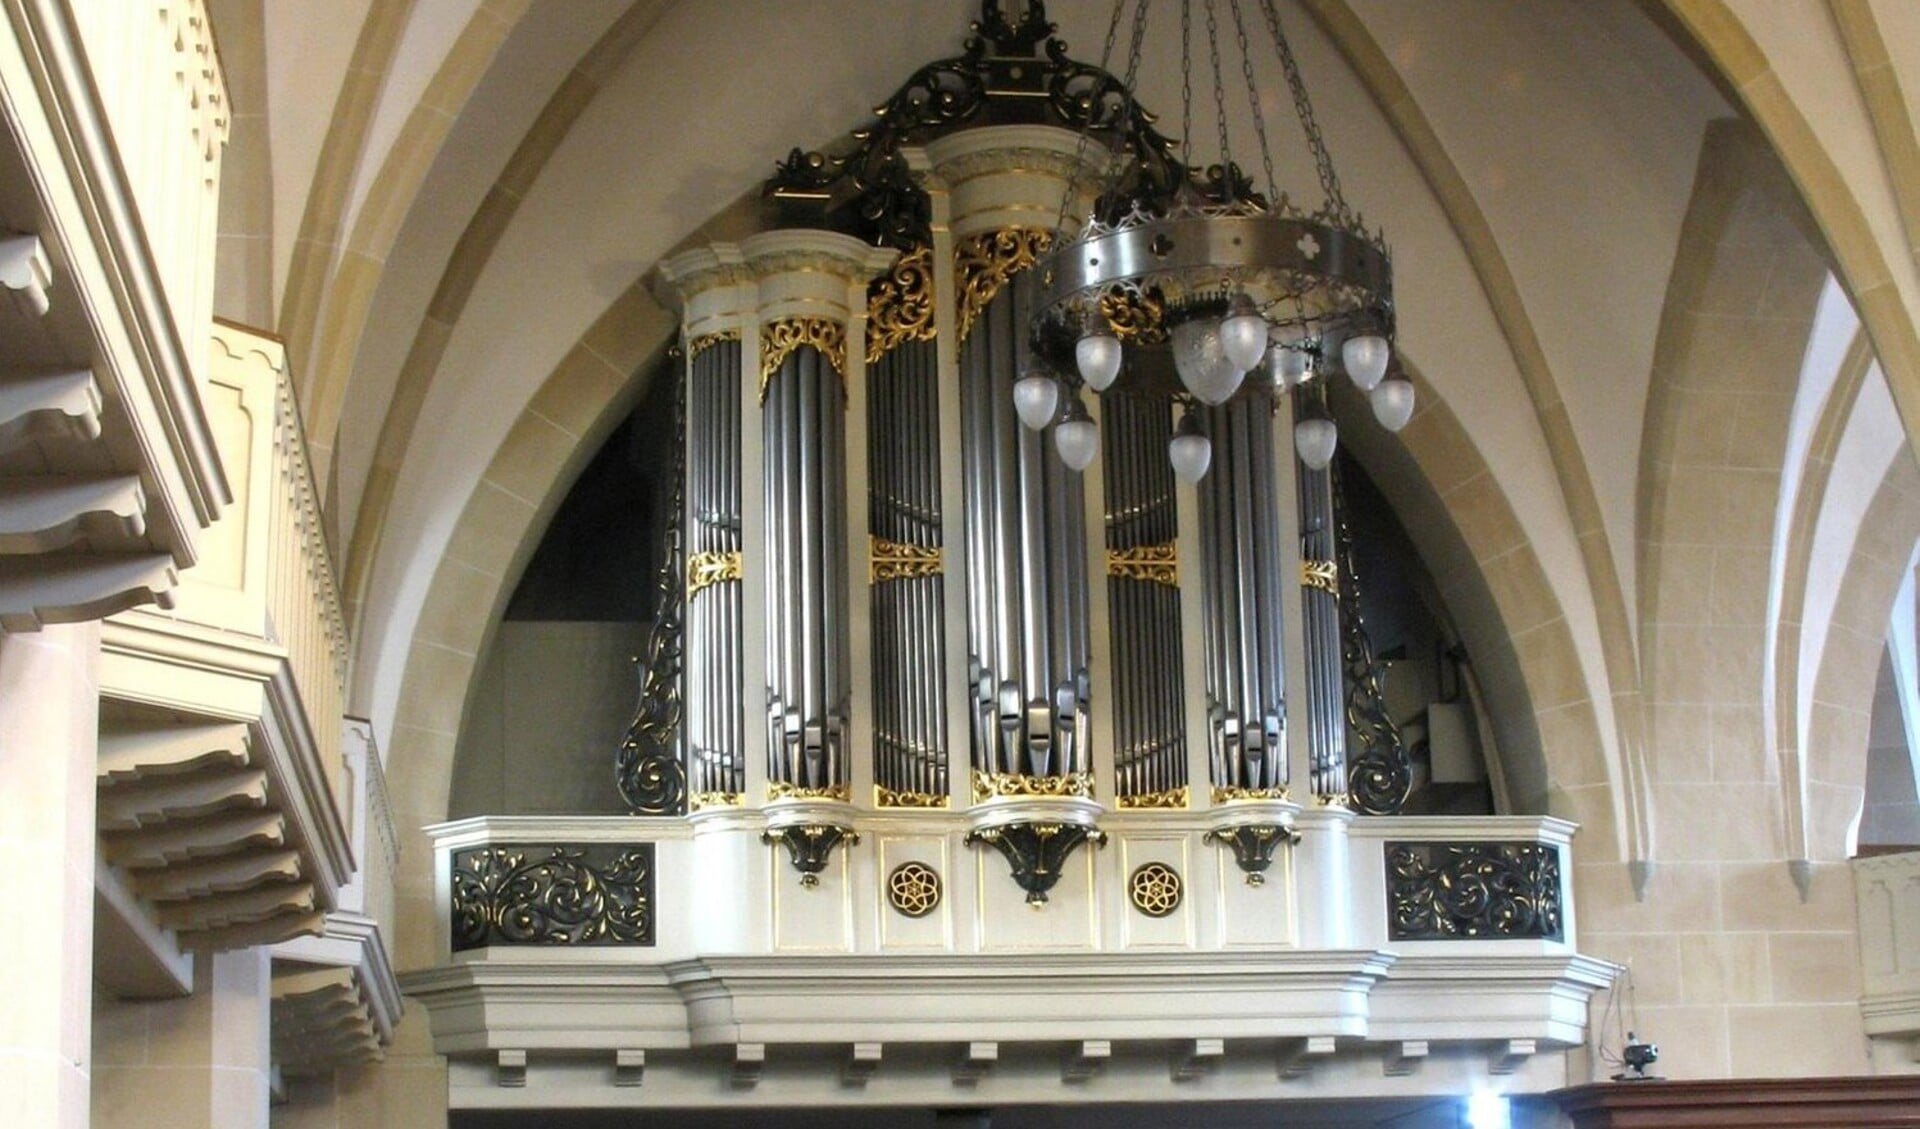 Het orgel in de Schildkerk waarop Jaap Zwart op 24 juli zal spelen.